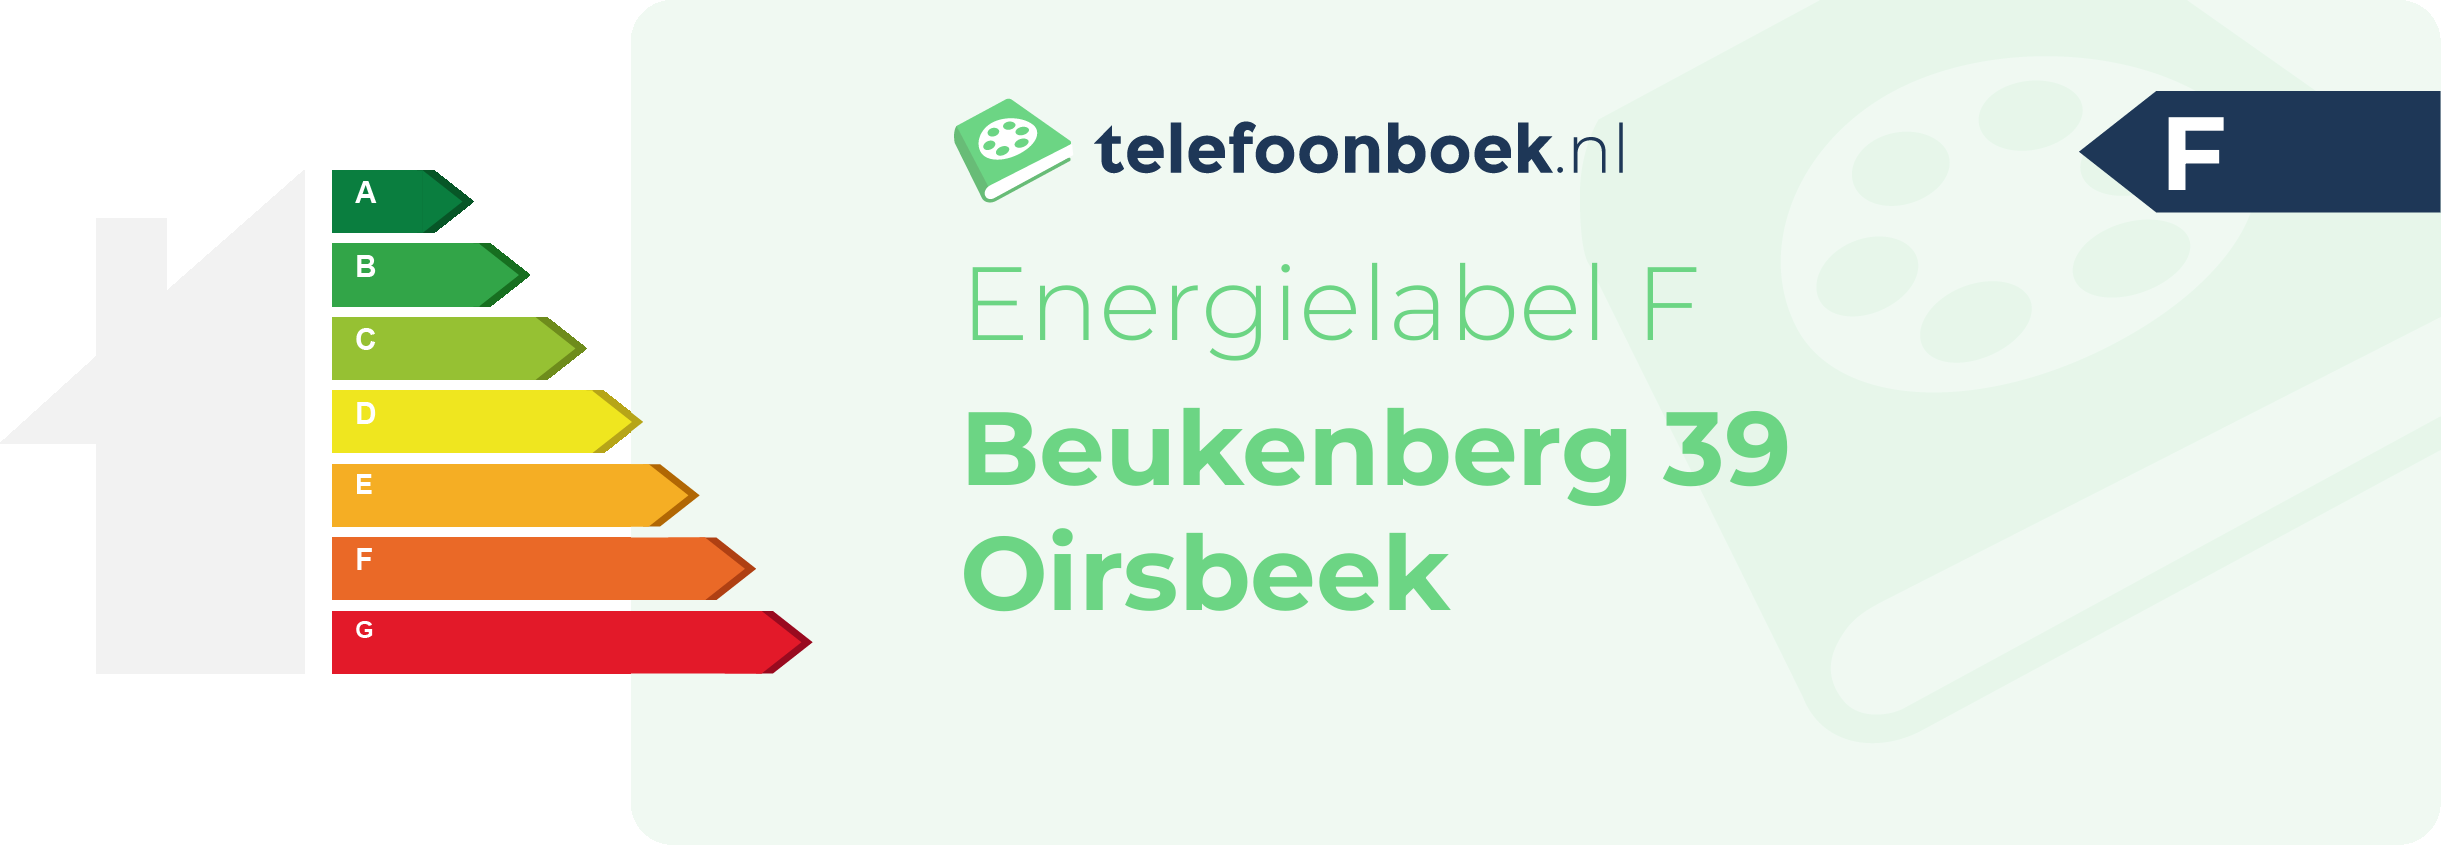 Energielabel Beukenberg 39 Oirsbeek